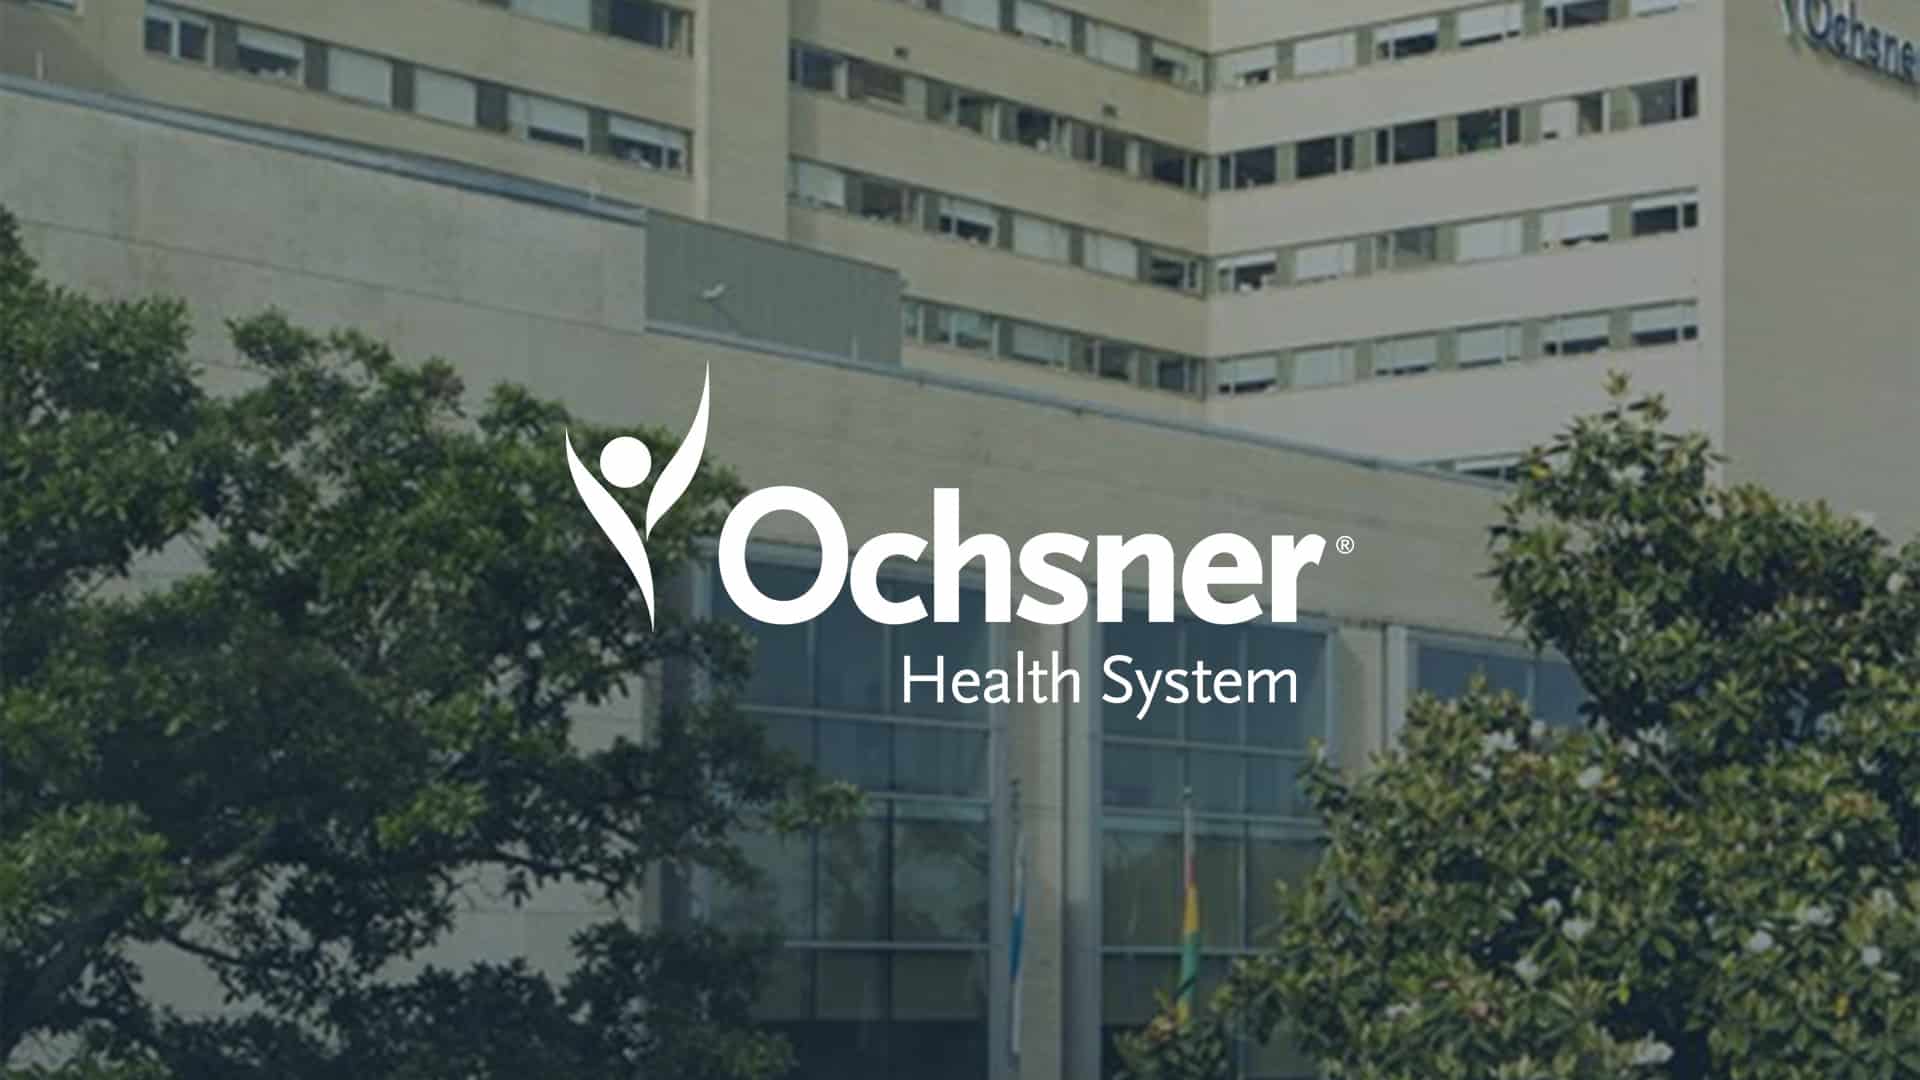 Success at Ochsner Health System